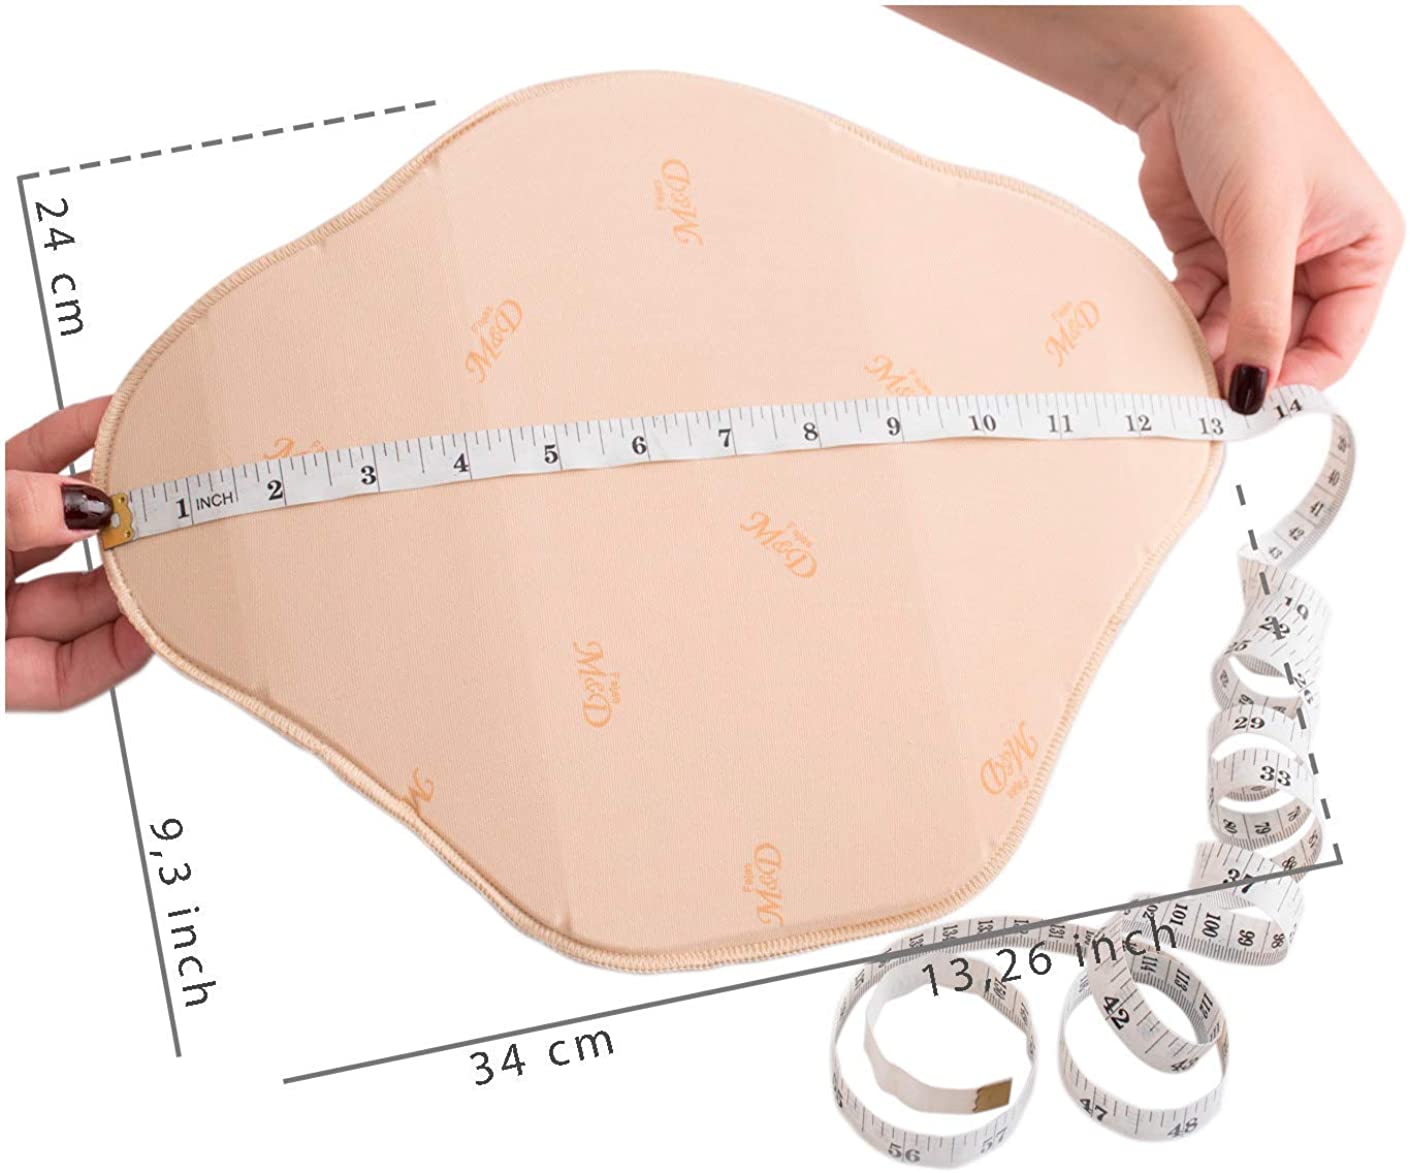 Bundle Flattening Faja Ab Board After Liposuction